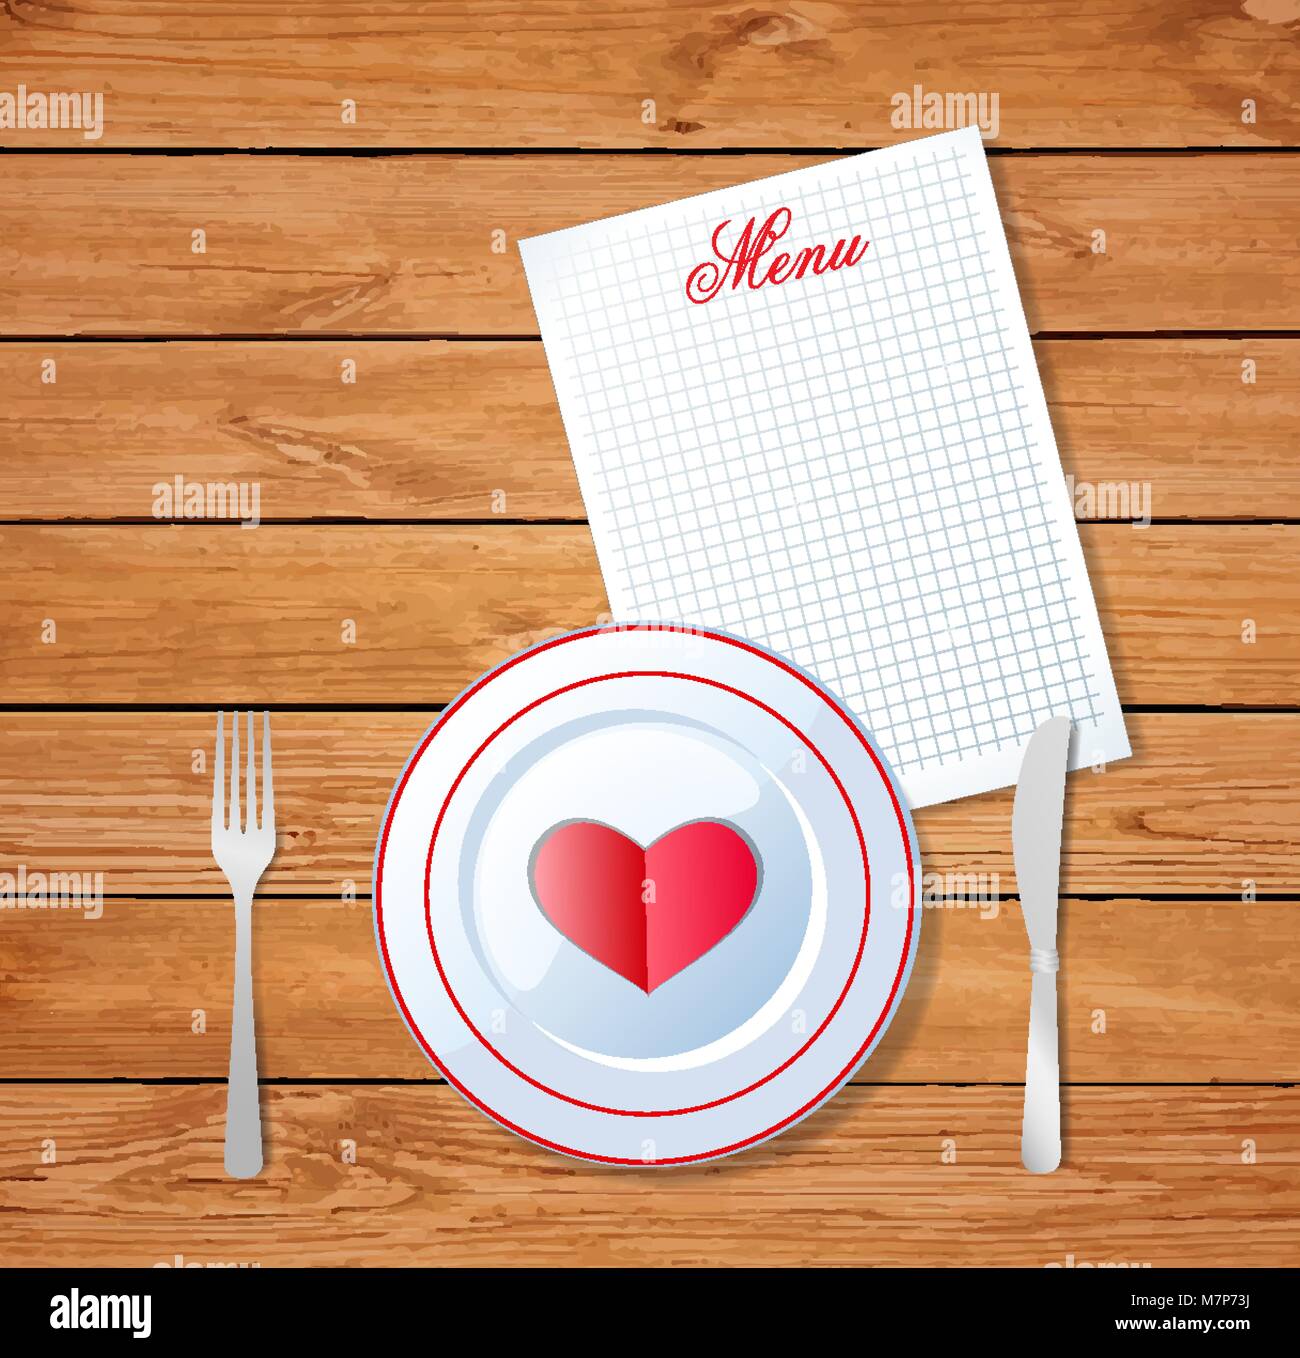 Vector Abbildung: Herz auf weißem Teller mit Messer und Gabel auf hölzernen Tisch Hintergrund und Blatt mit Titel Menü und Platz für Text. Vale Stock Vektor